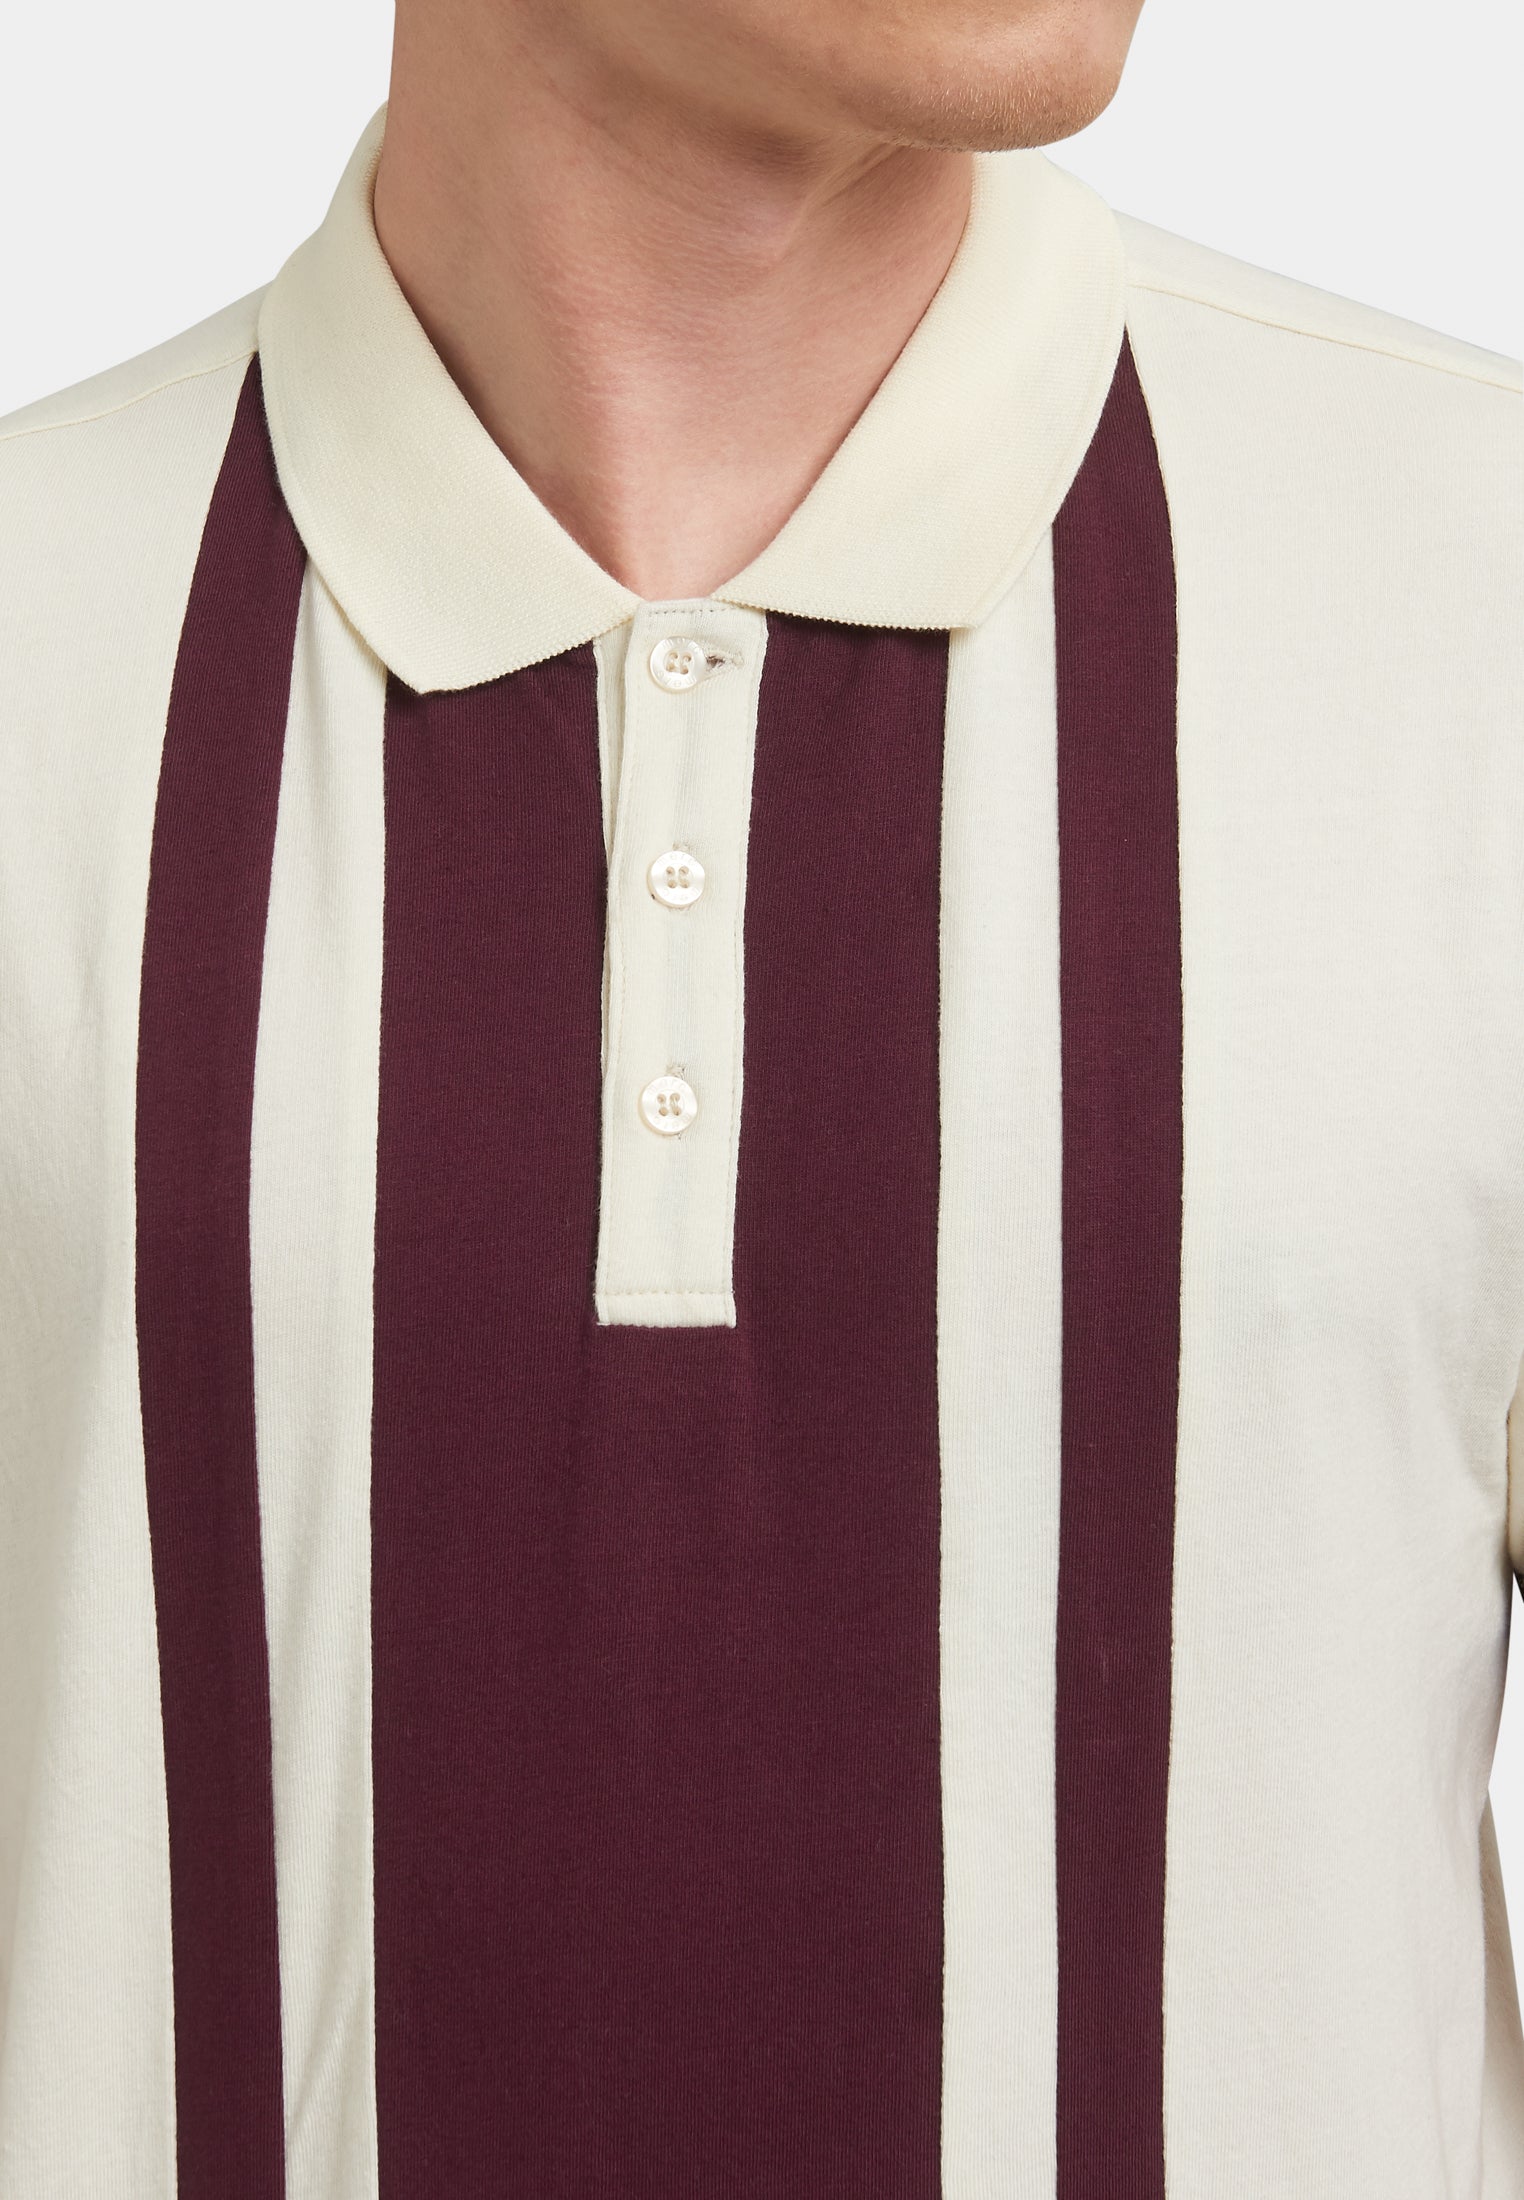 Fry Stripes Polo Shirt Detail - Merc London